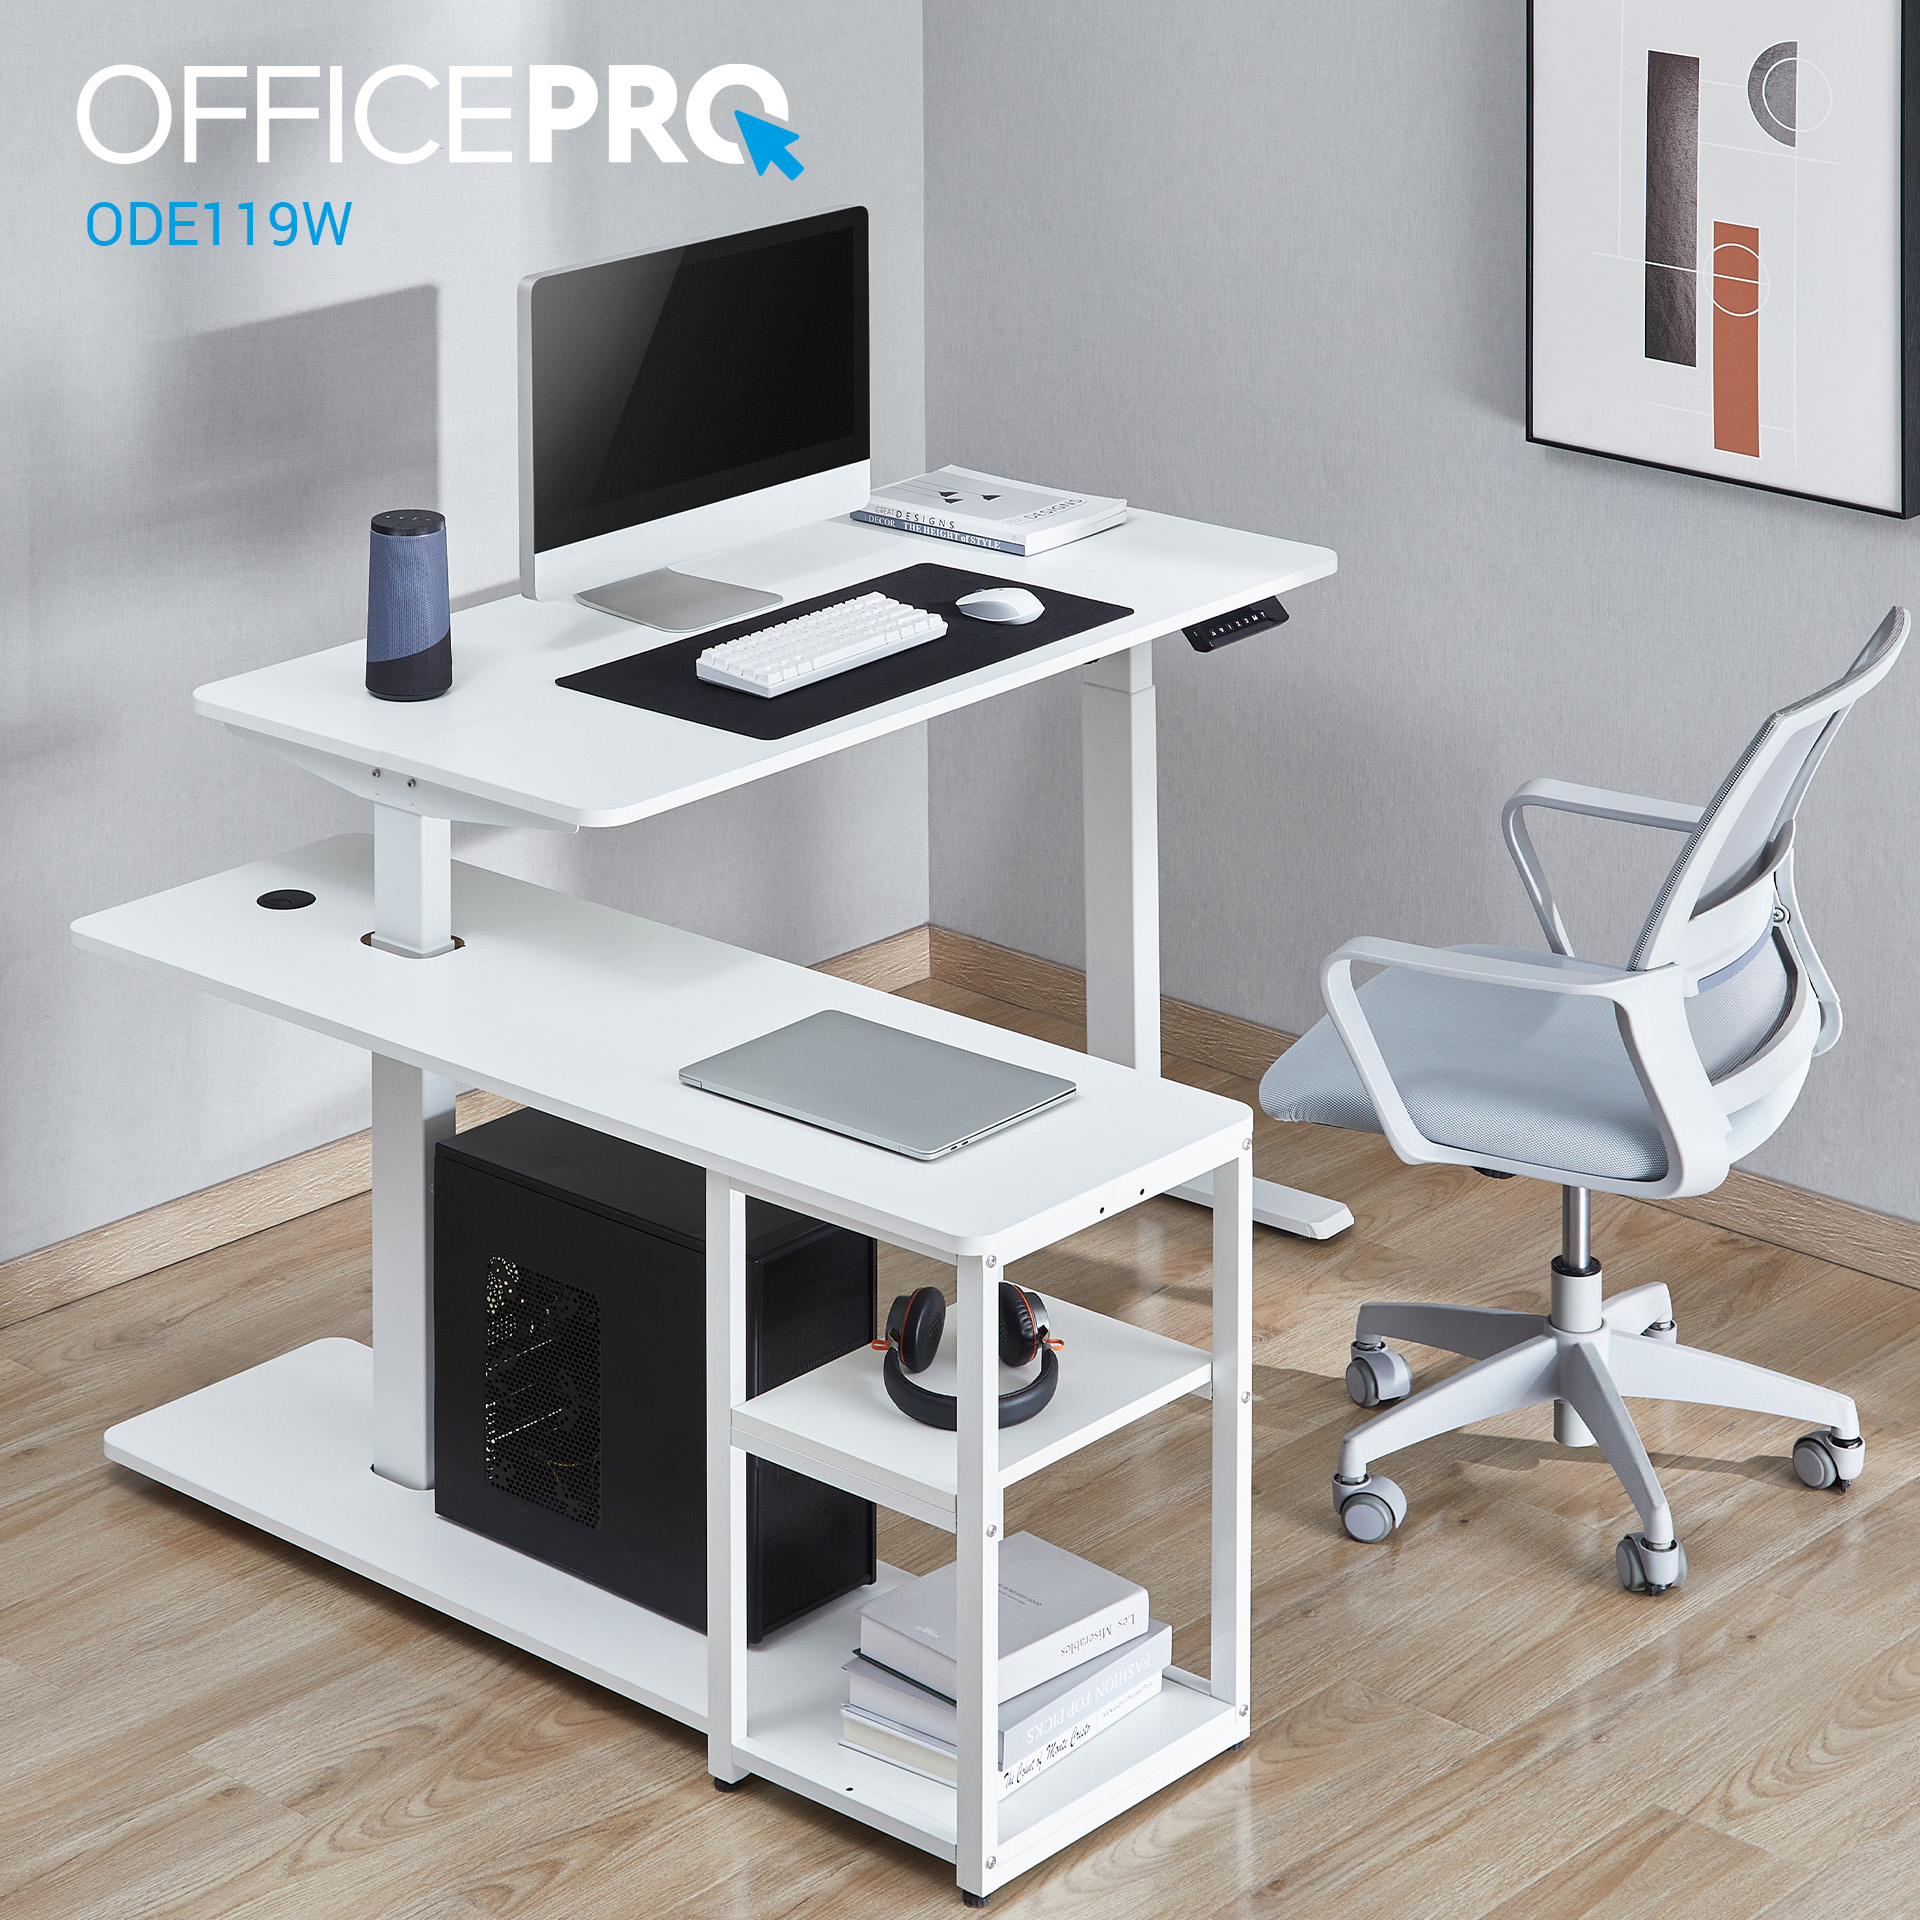 Комп'ютерний стіл OfficePro з електрорегулюванням висоти білий (ODE119W) - фото 18